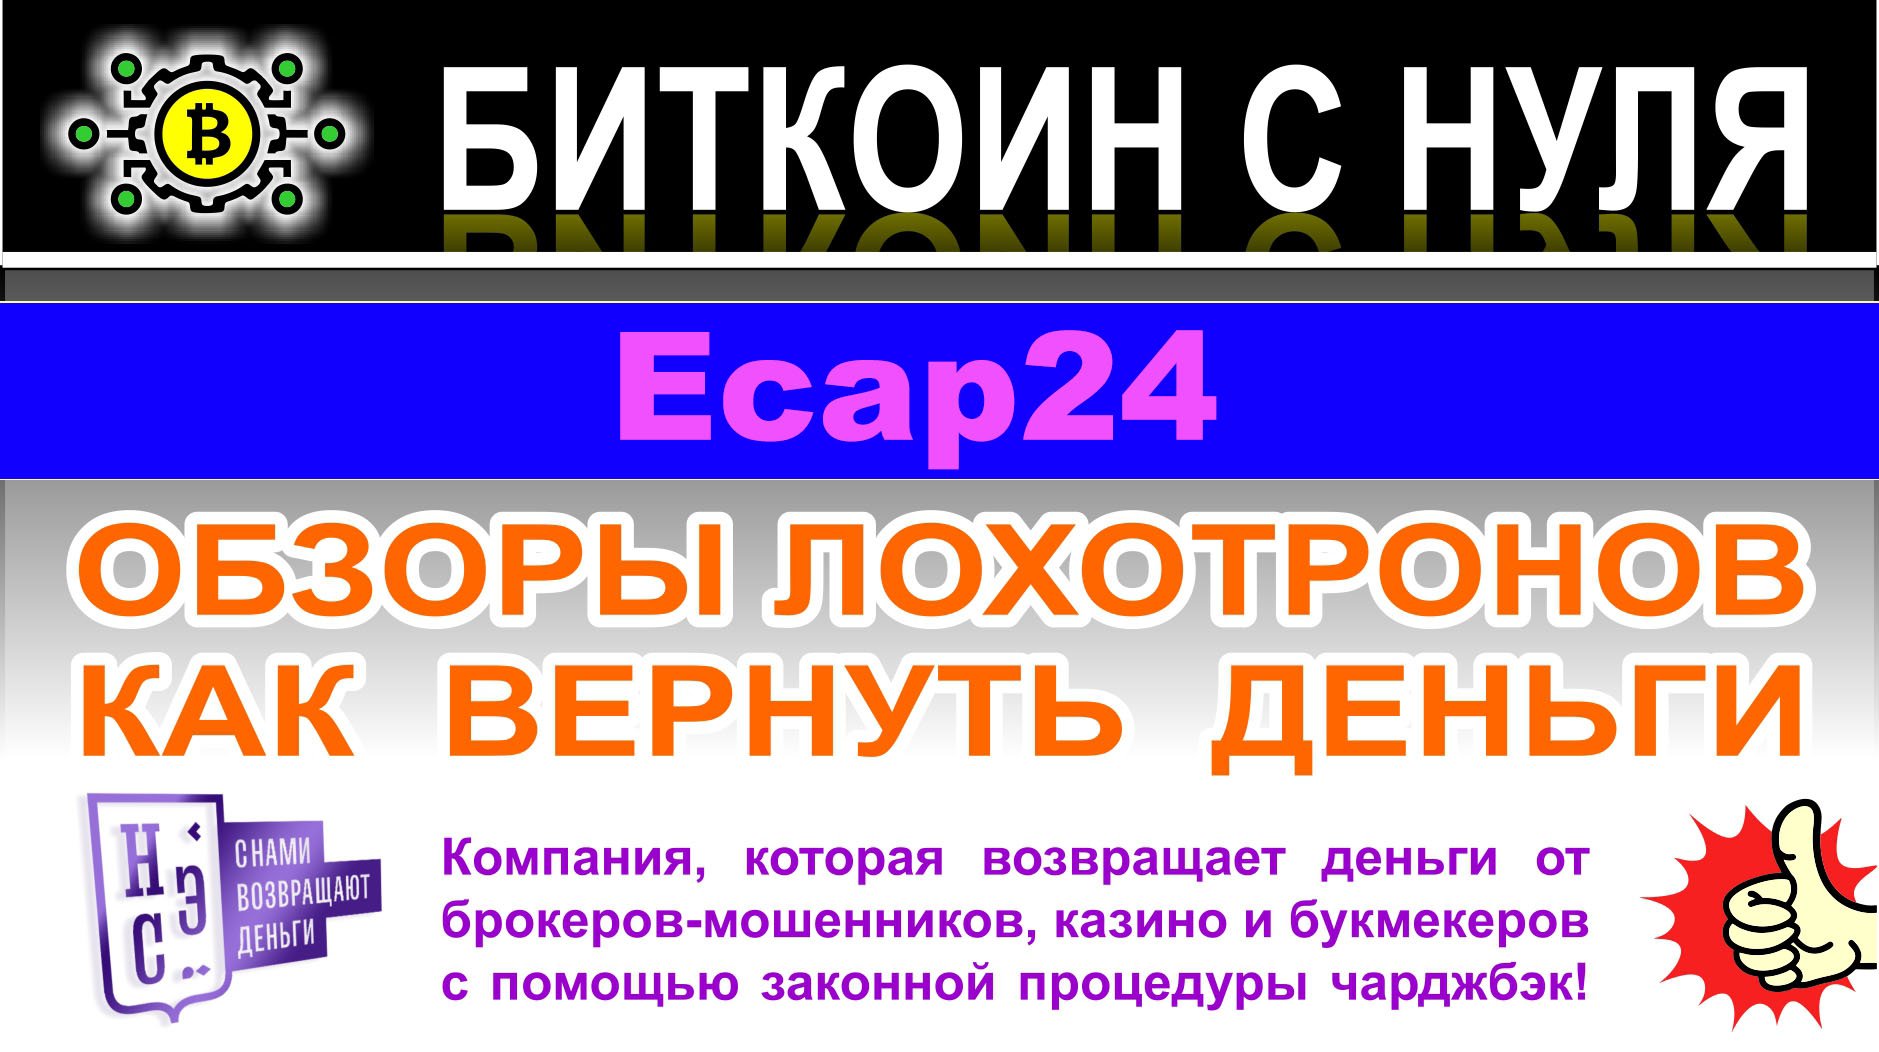 Ecap24 — опасный проект запрещенный в России. Не стоит сотрудничать, лохотрон. Отзывы.